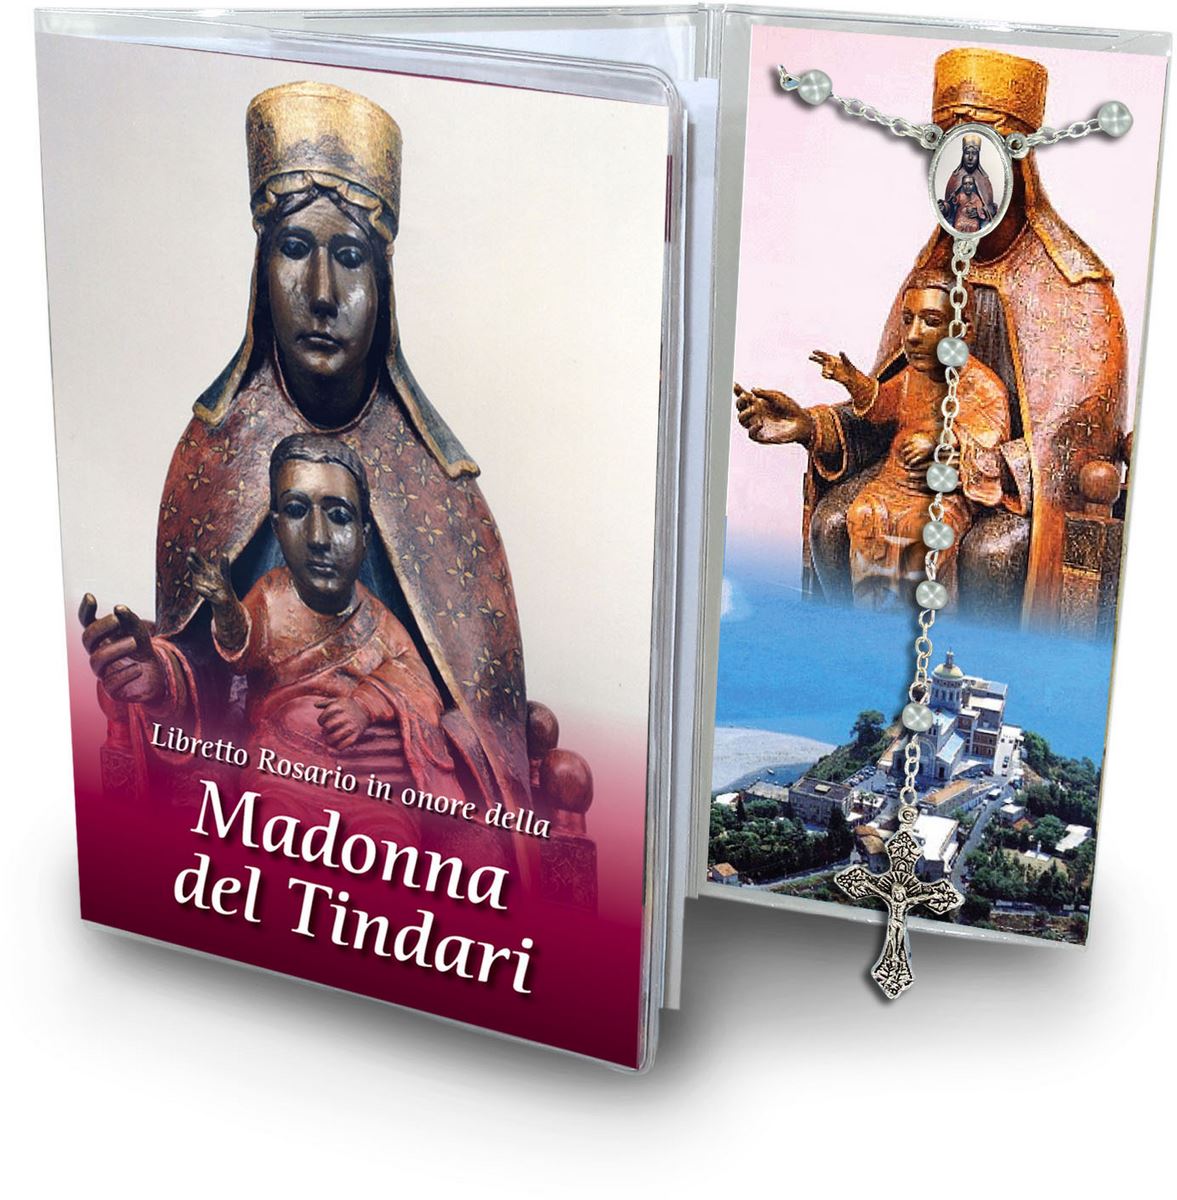 libretto con rosario madonna del tindari (messina) - italiano